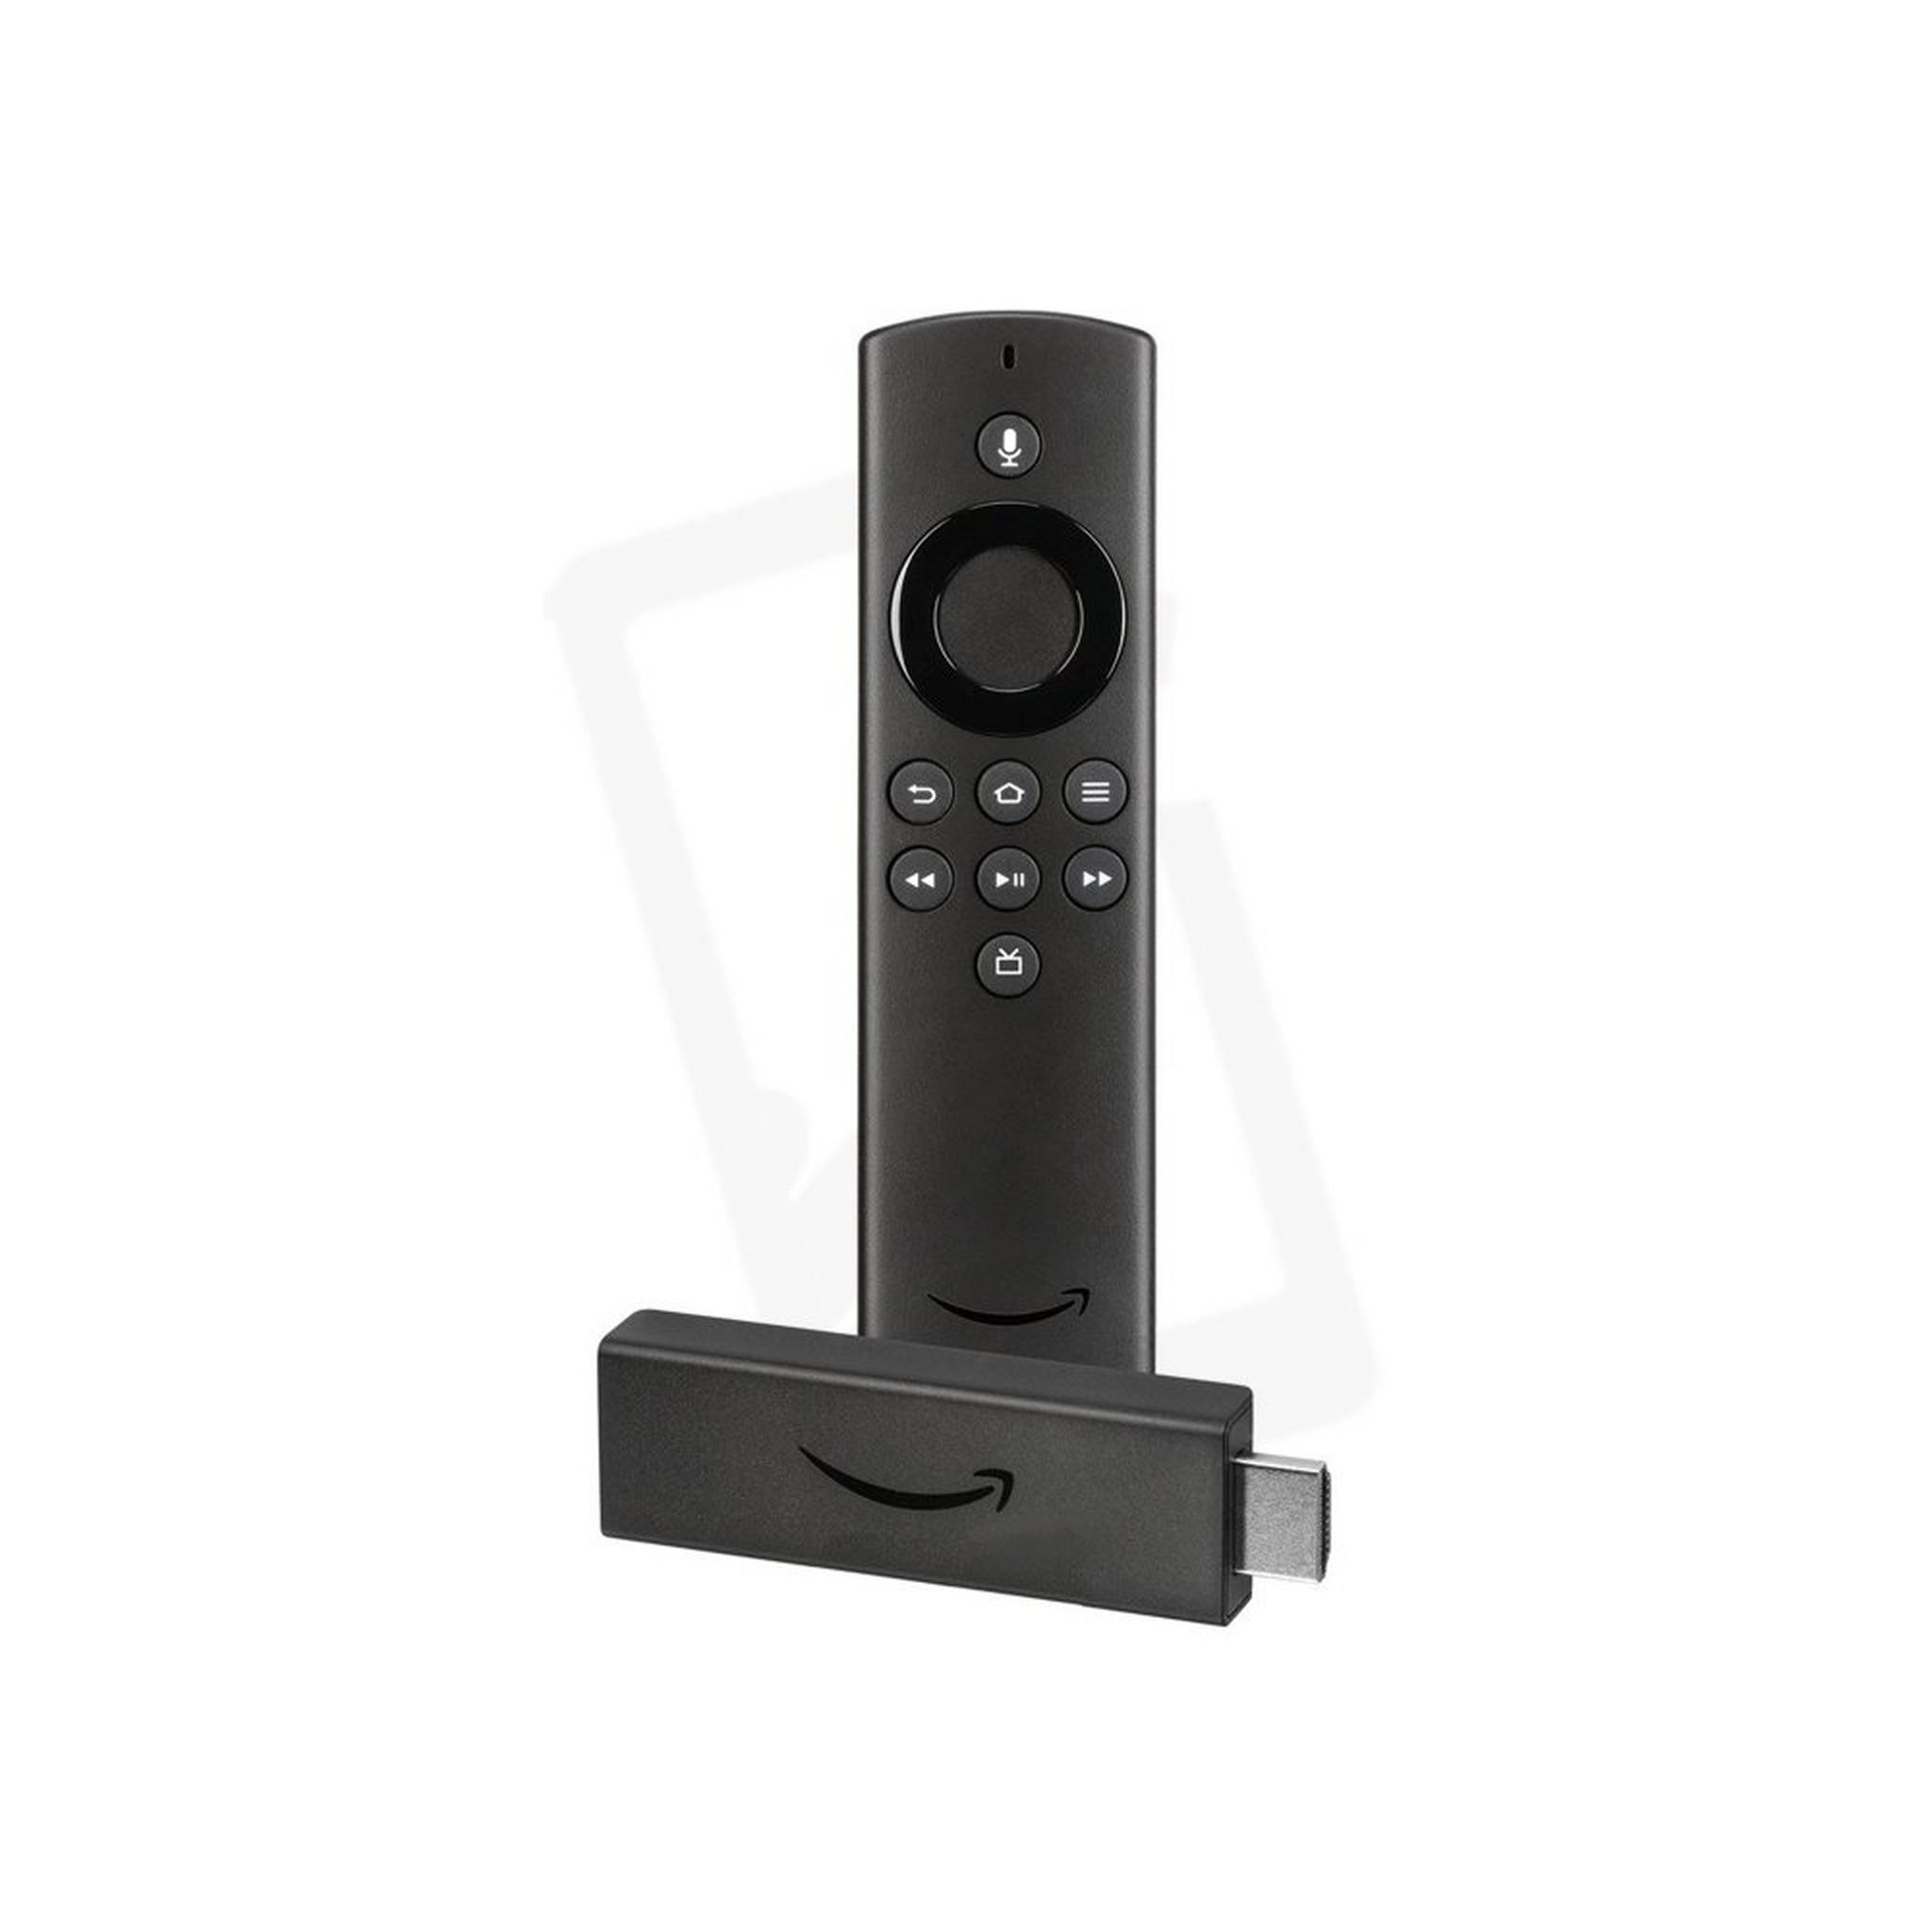 Amazon Fire TV Stick Lite with Alexa Voice Remote, G071CQ0910140FJ9 – Black